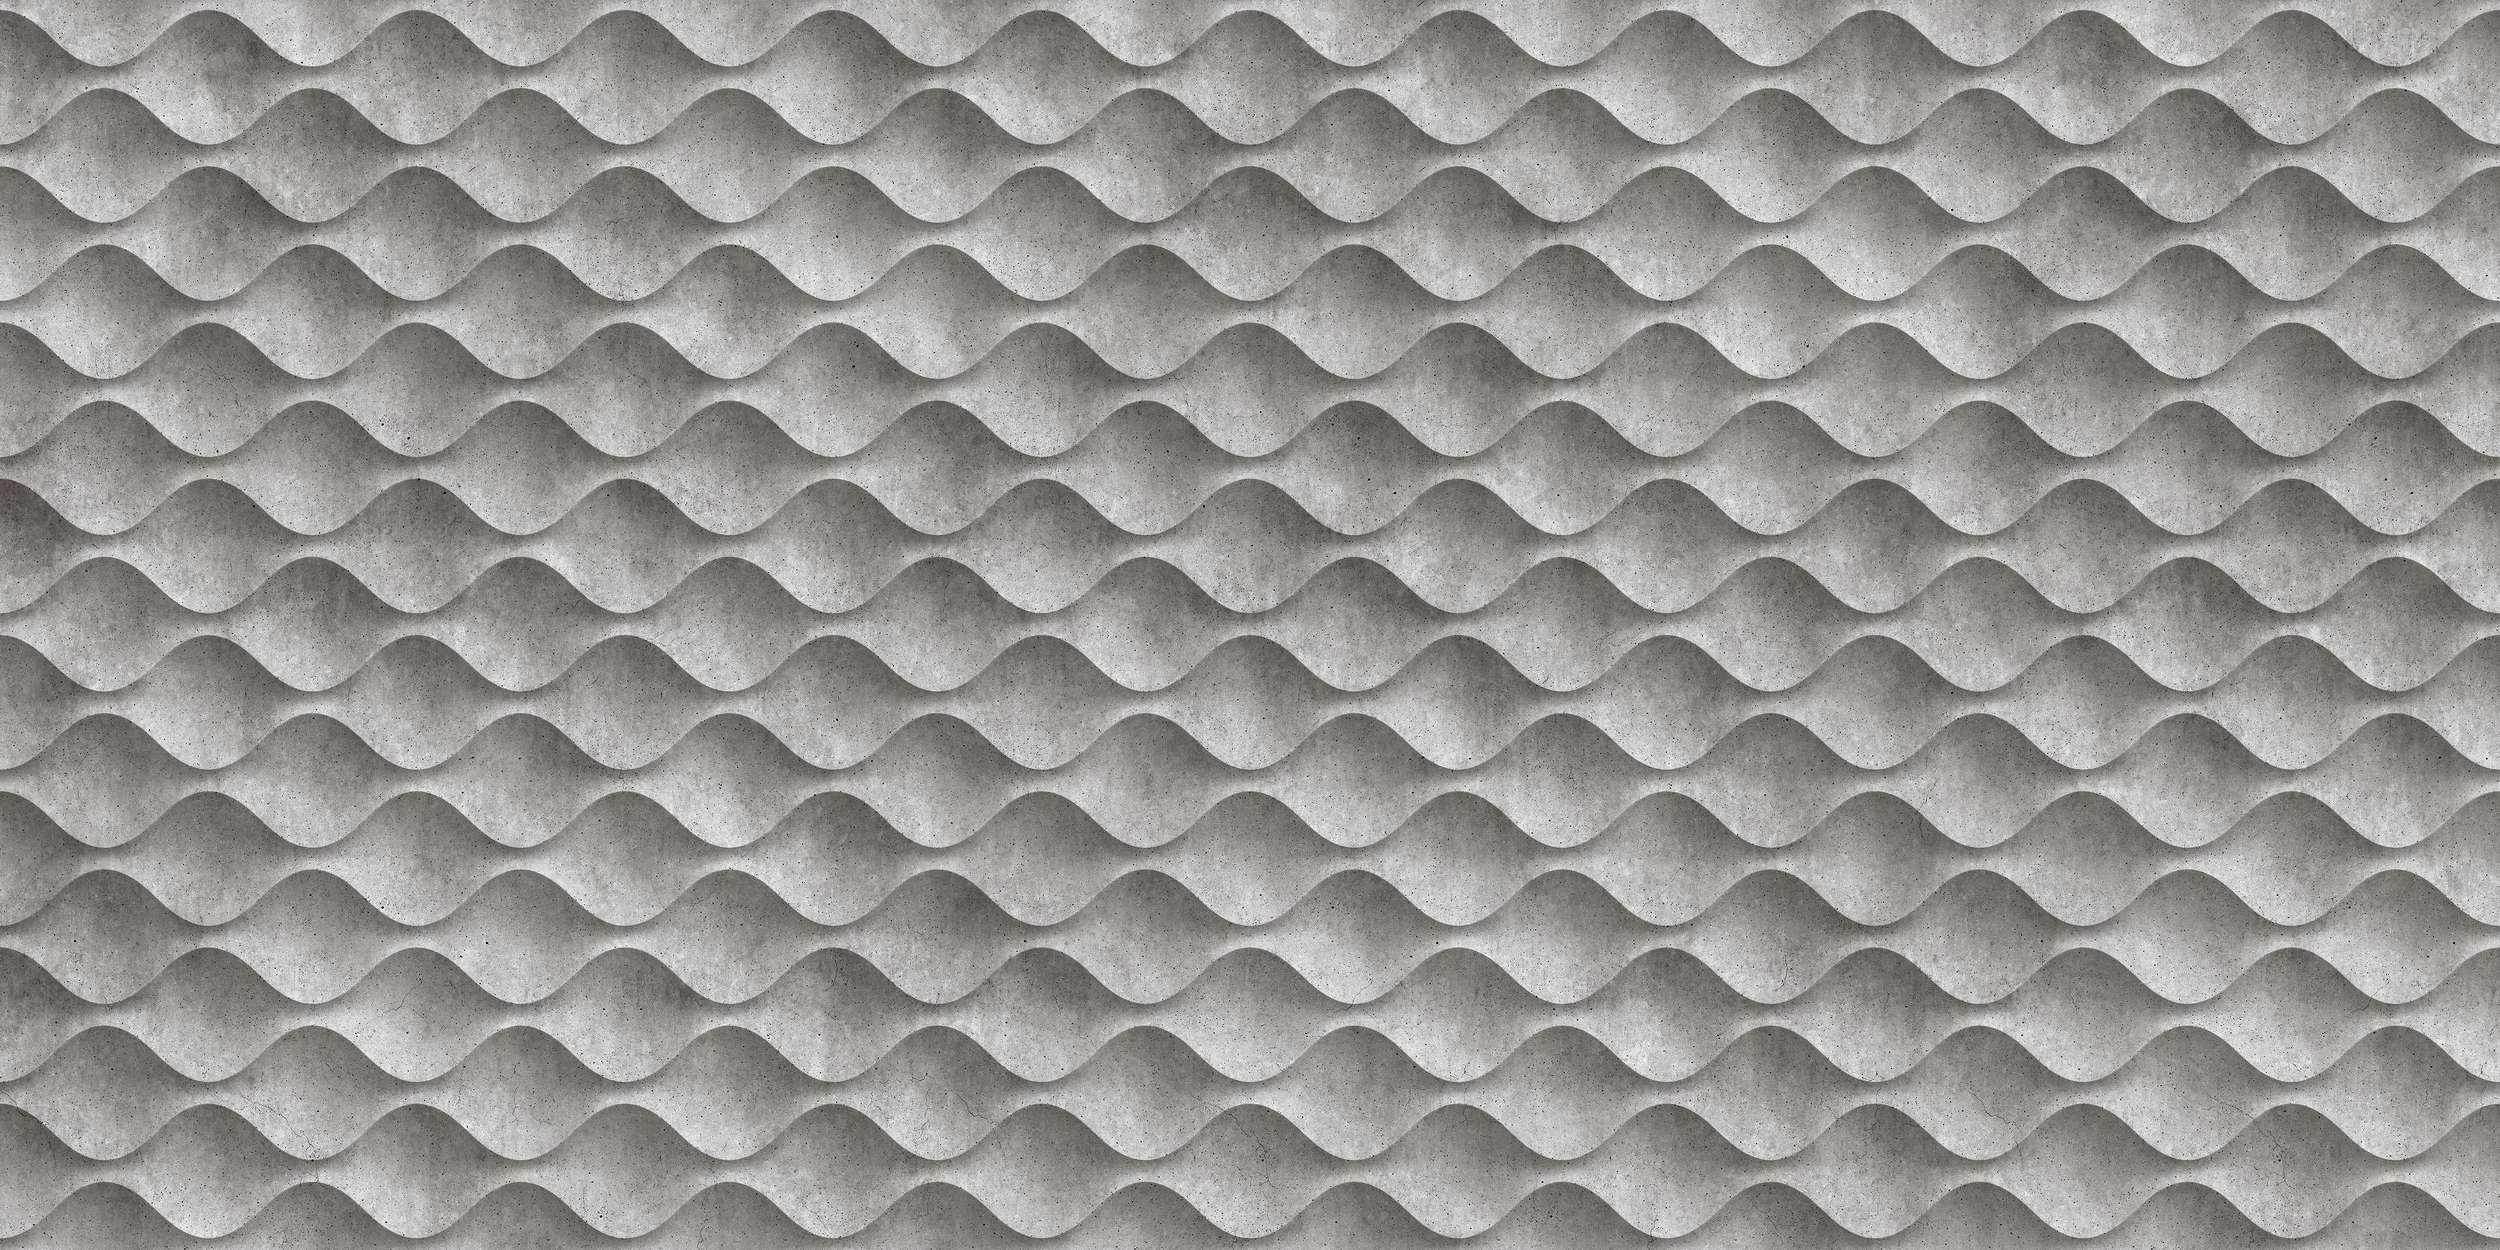             Concrete 1 - Cool 3D Concrete Waves Wallpaper - Grey, Black | Matt Smooth Non-woven
        